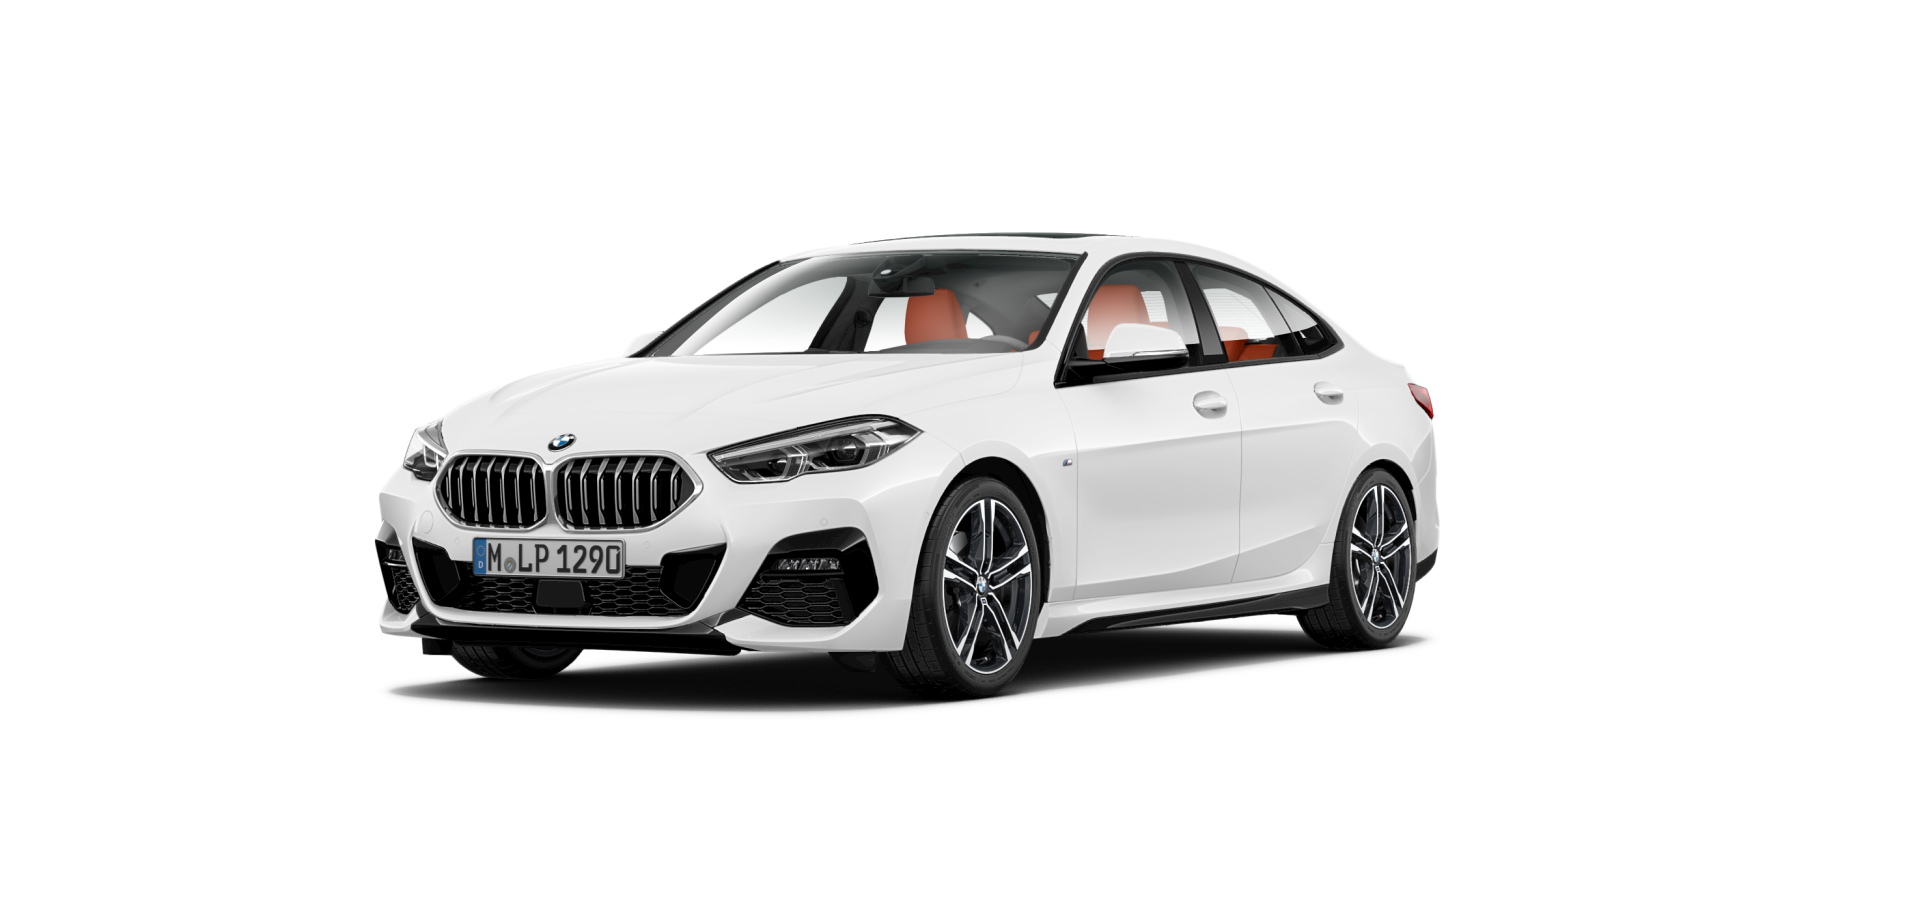 ซื้อ BMW 220i   M sport ออนไลน์